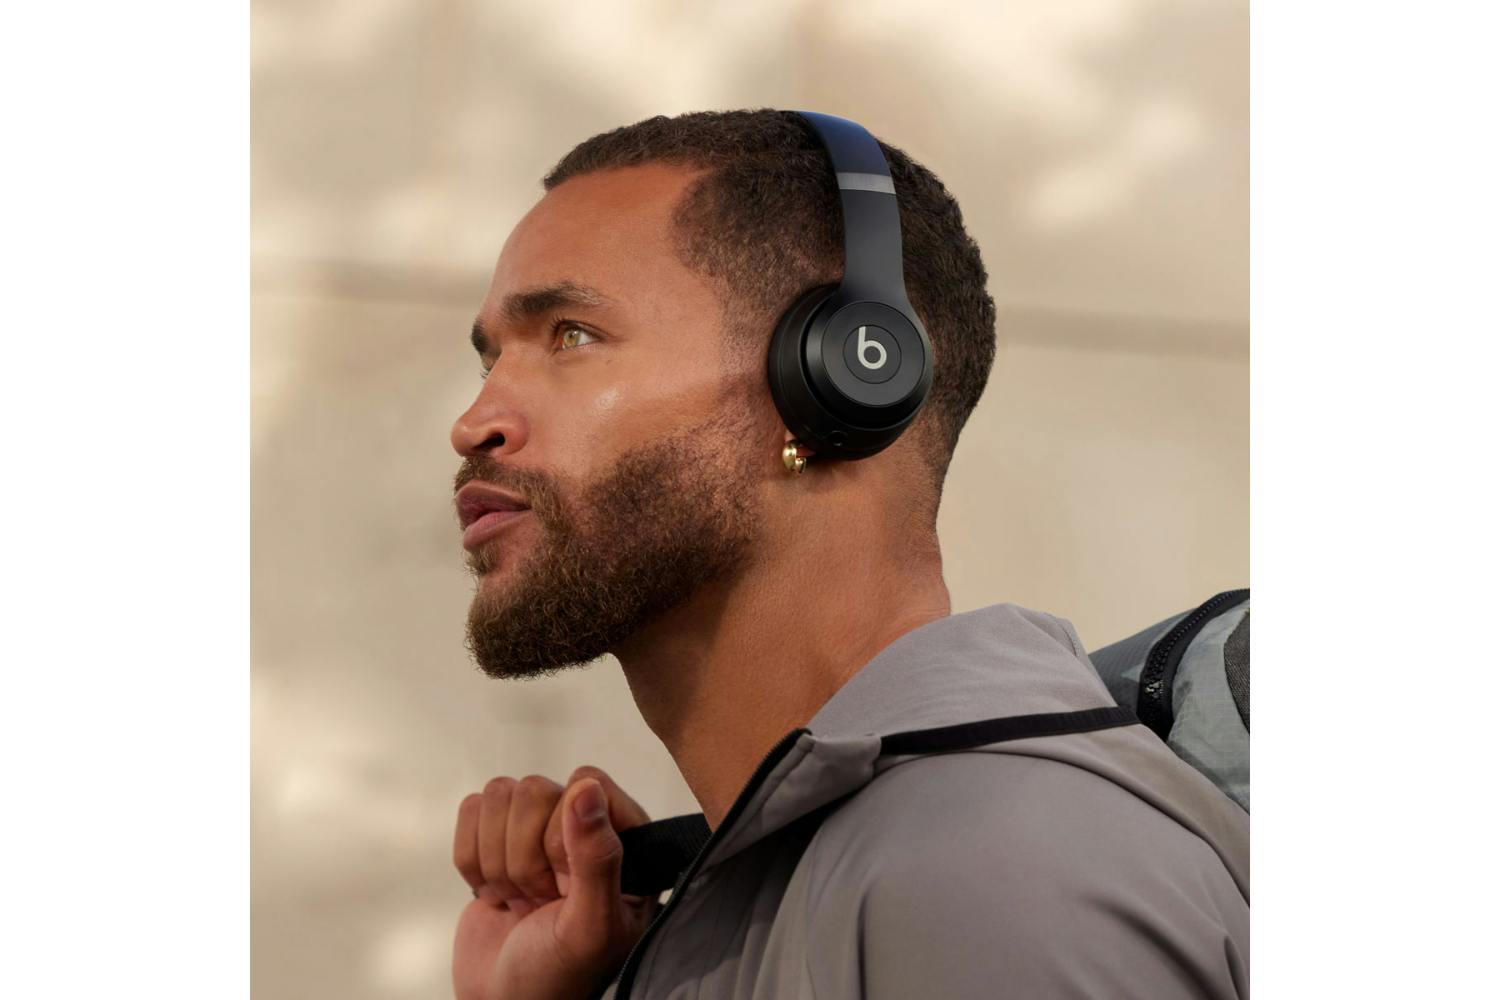 Beats Solo 4 On-Ear Wireless Headphones | Matte Black